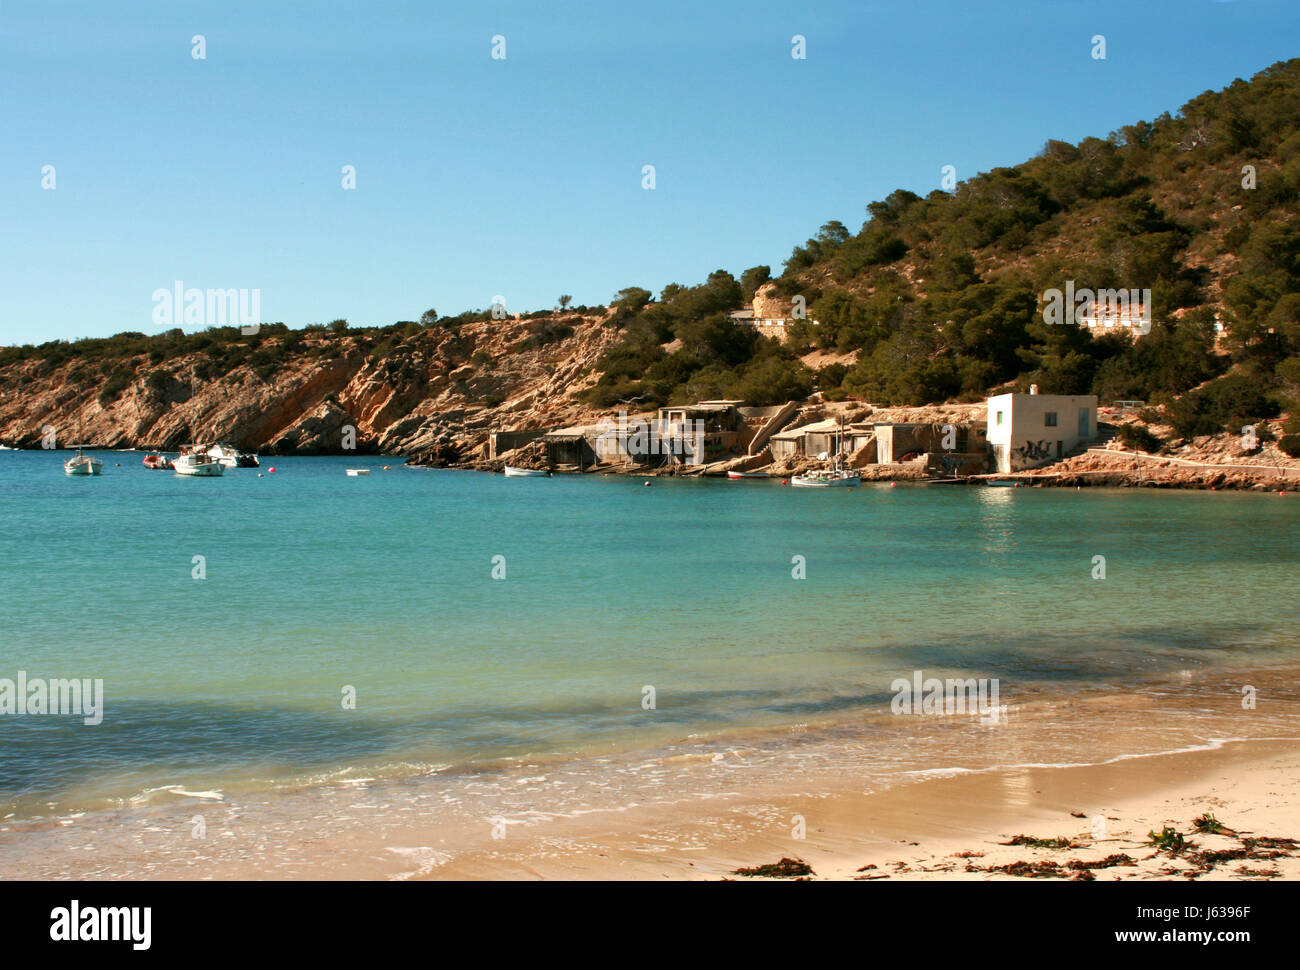 España el agua salada del mar mediterráneo océano bahía desierta idilio playa azul Foto de stock